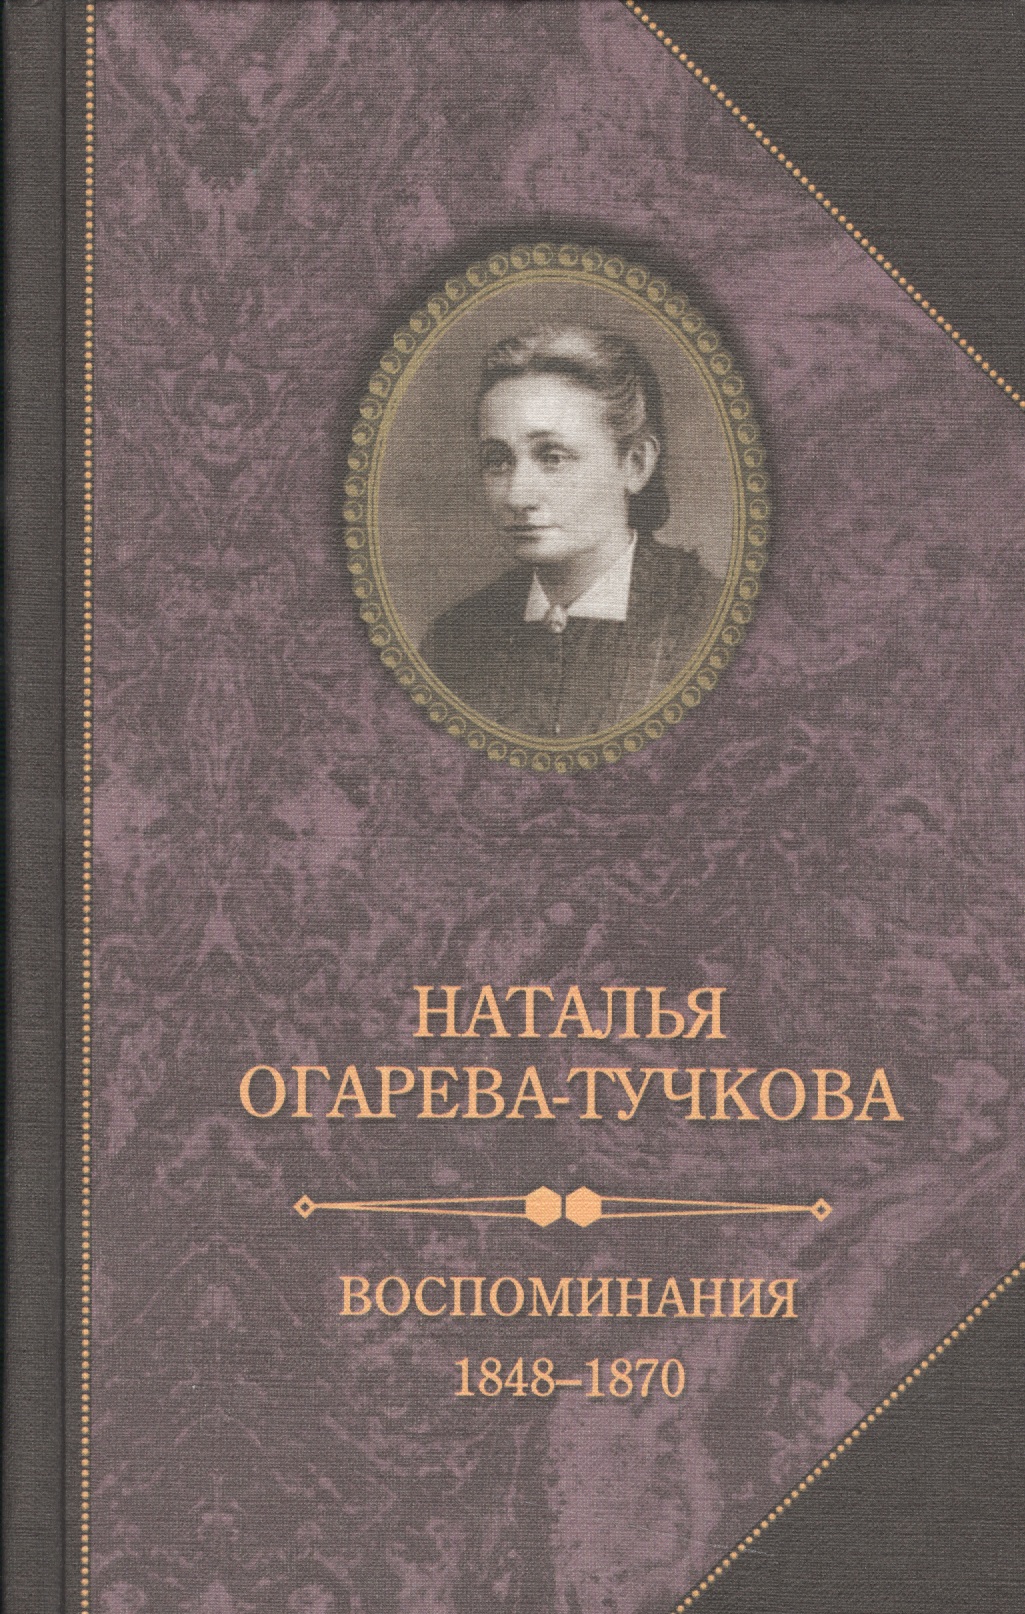 Воспоминания 1848-1870